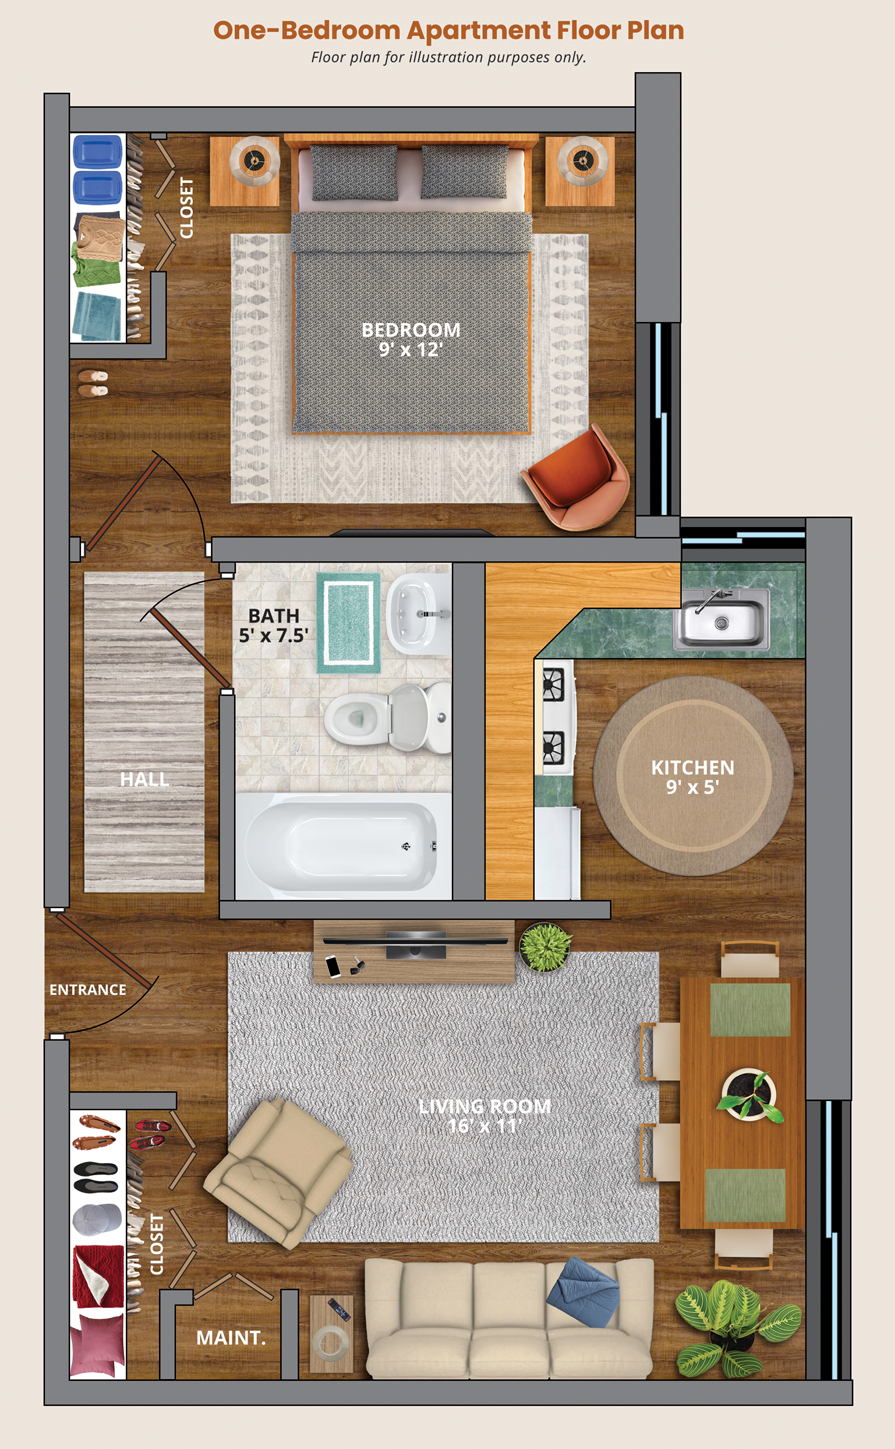 Lakeview Manor 1-Bedroom Floor Plan Sample